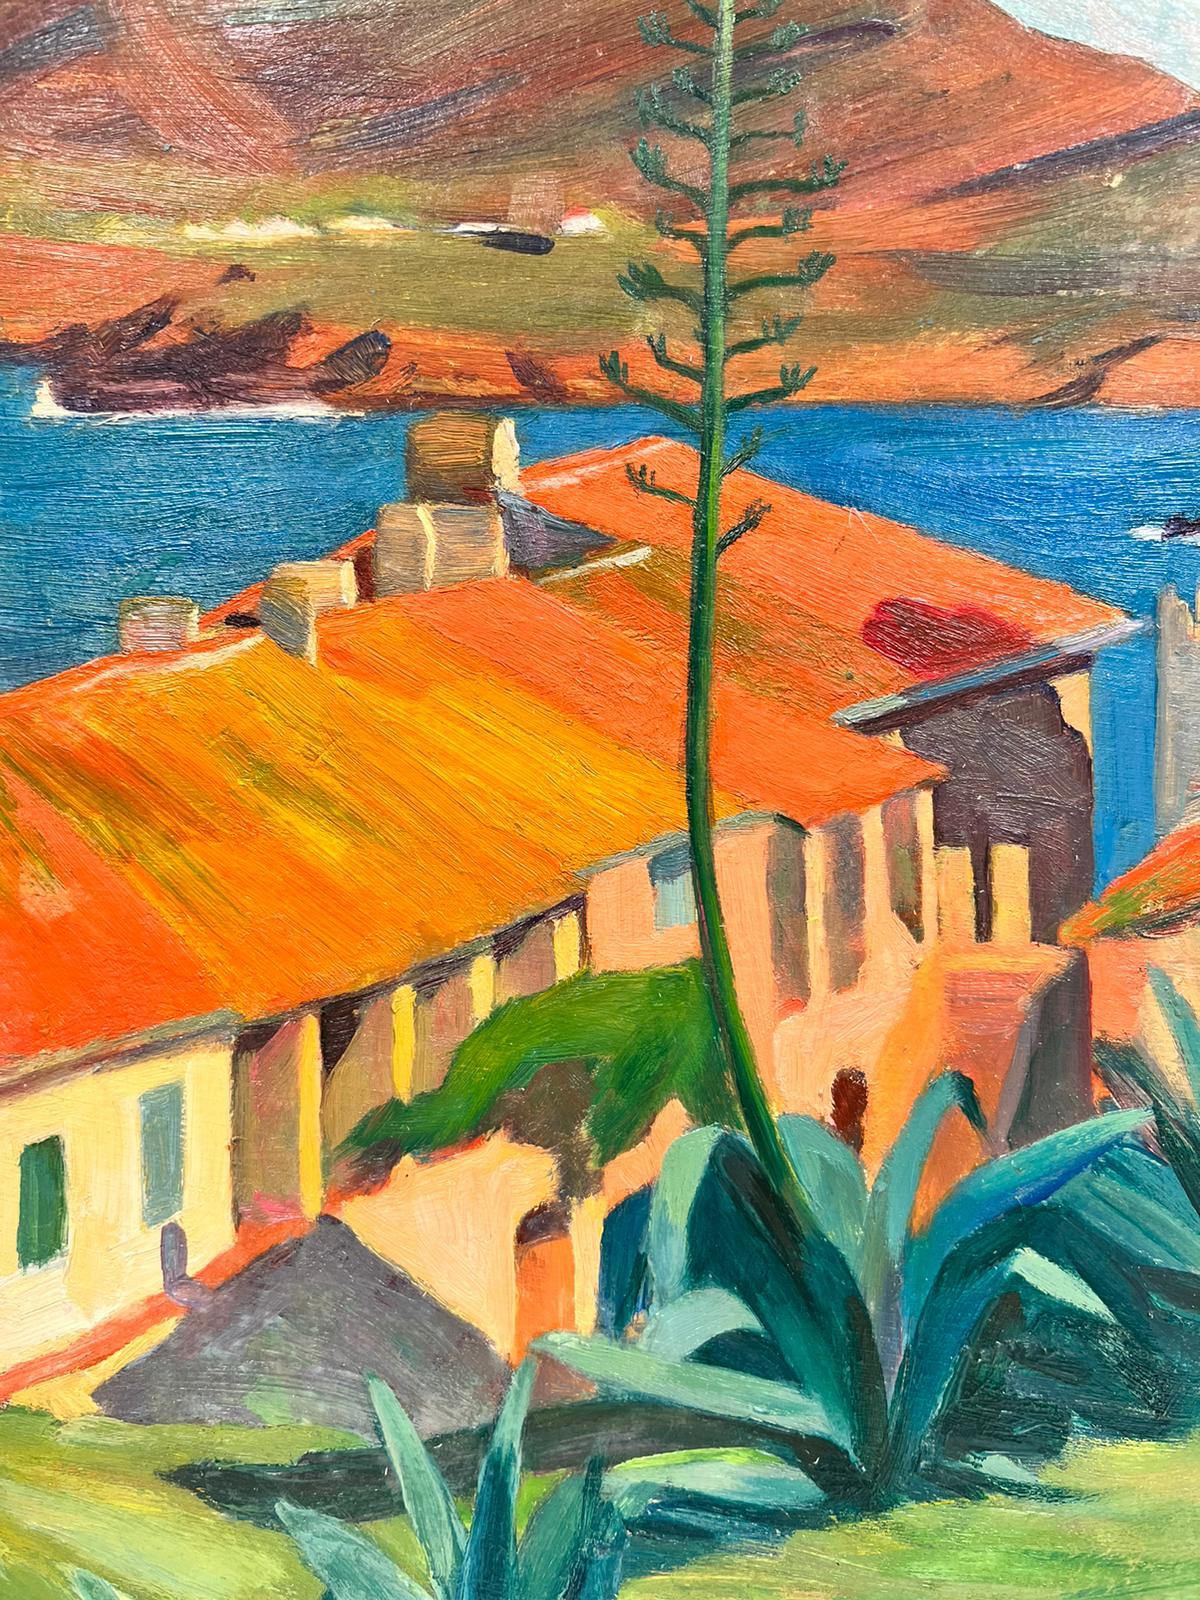 Künstler/Schule: Suzanne Crochet (Französin um 1930), Künstlerin des französischen Impressionismus

Titel: Orangefarbene Dächer, grüne Pflanzen (Küstenszene in Frankreich). 

Medium: Öl auf Karton, ungerahmt 

Brett: 13 x 9 Zoll

Provenienz: